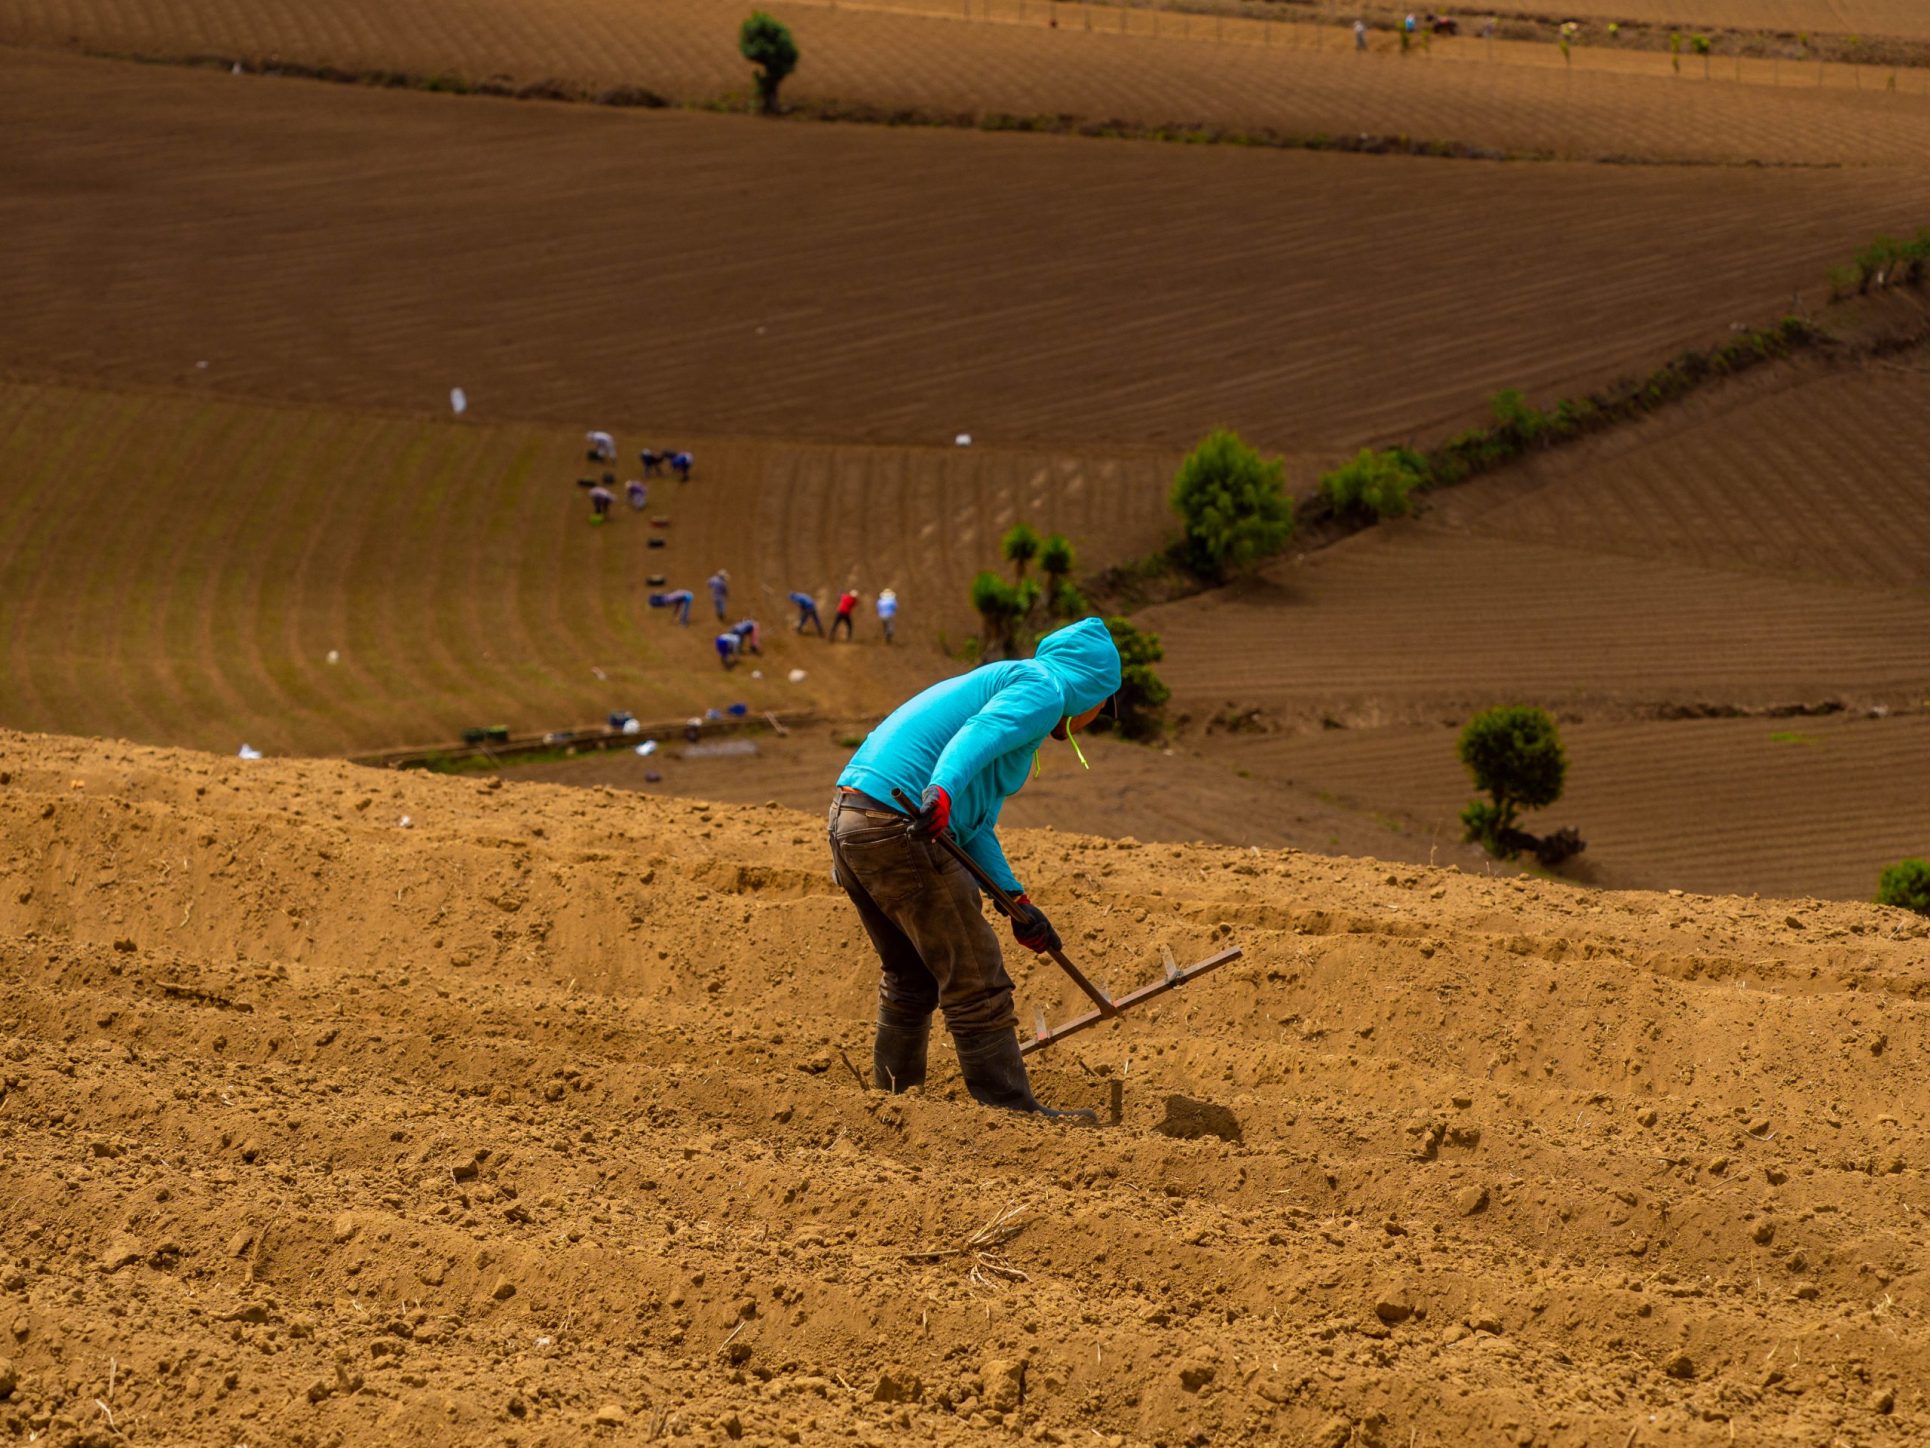 Empresas agrícolas con trabajadores migrantes irregulares se expondrán a multas desde setiembre